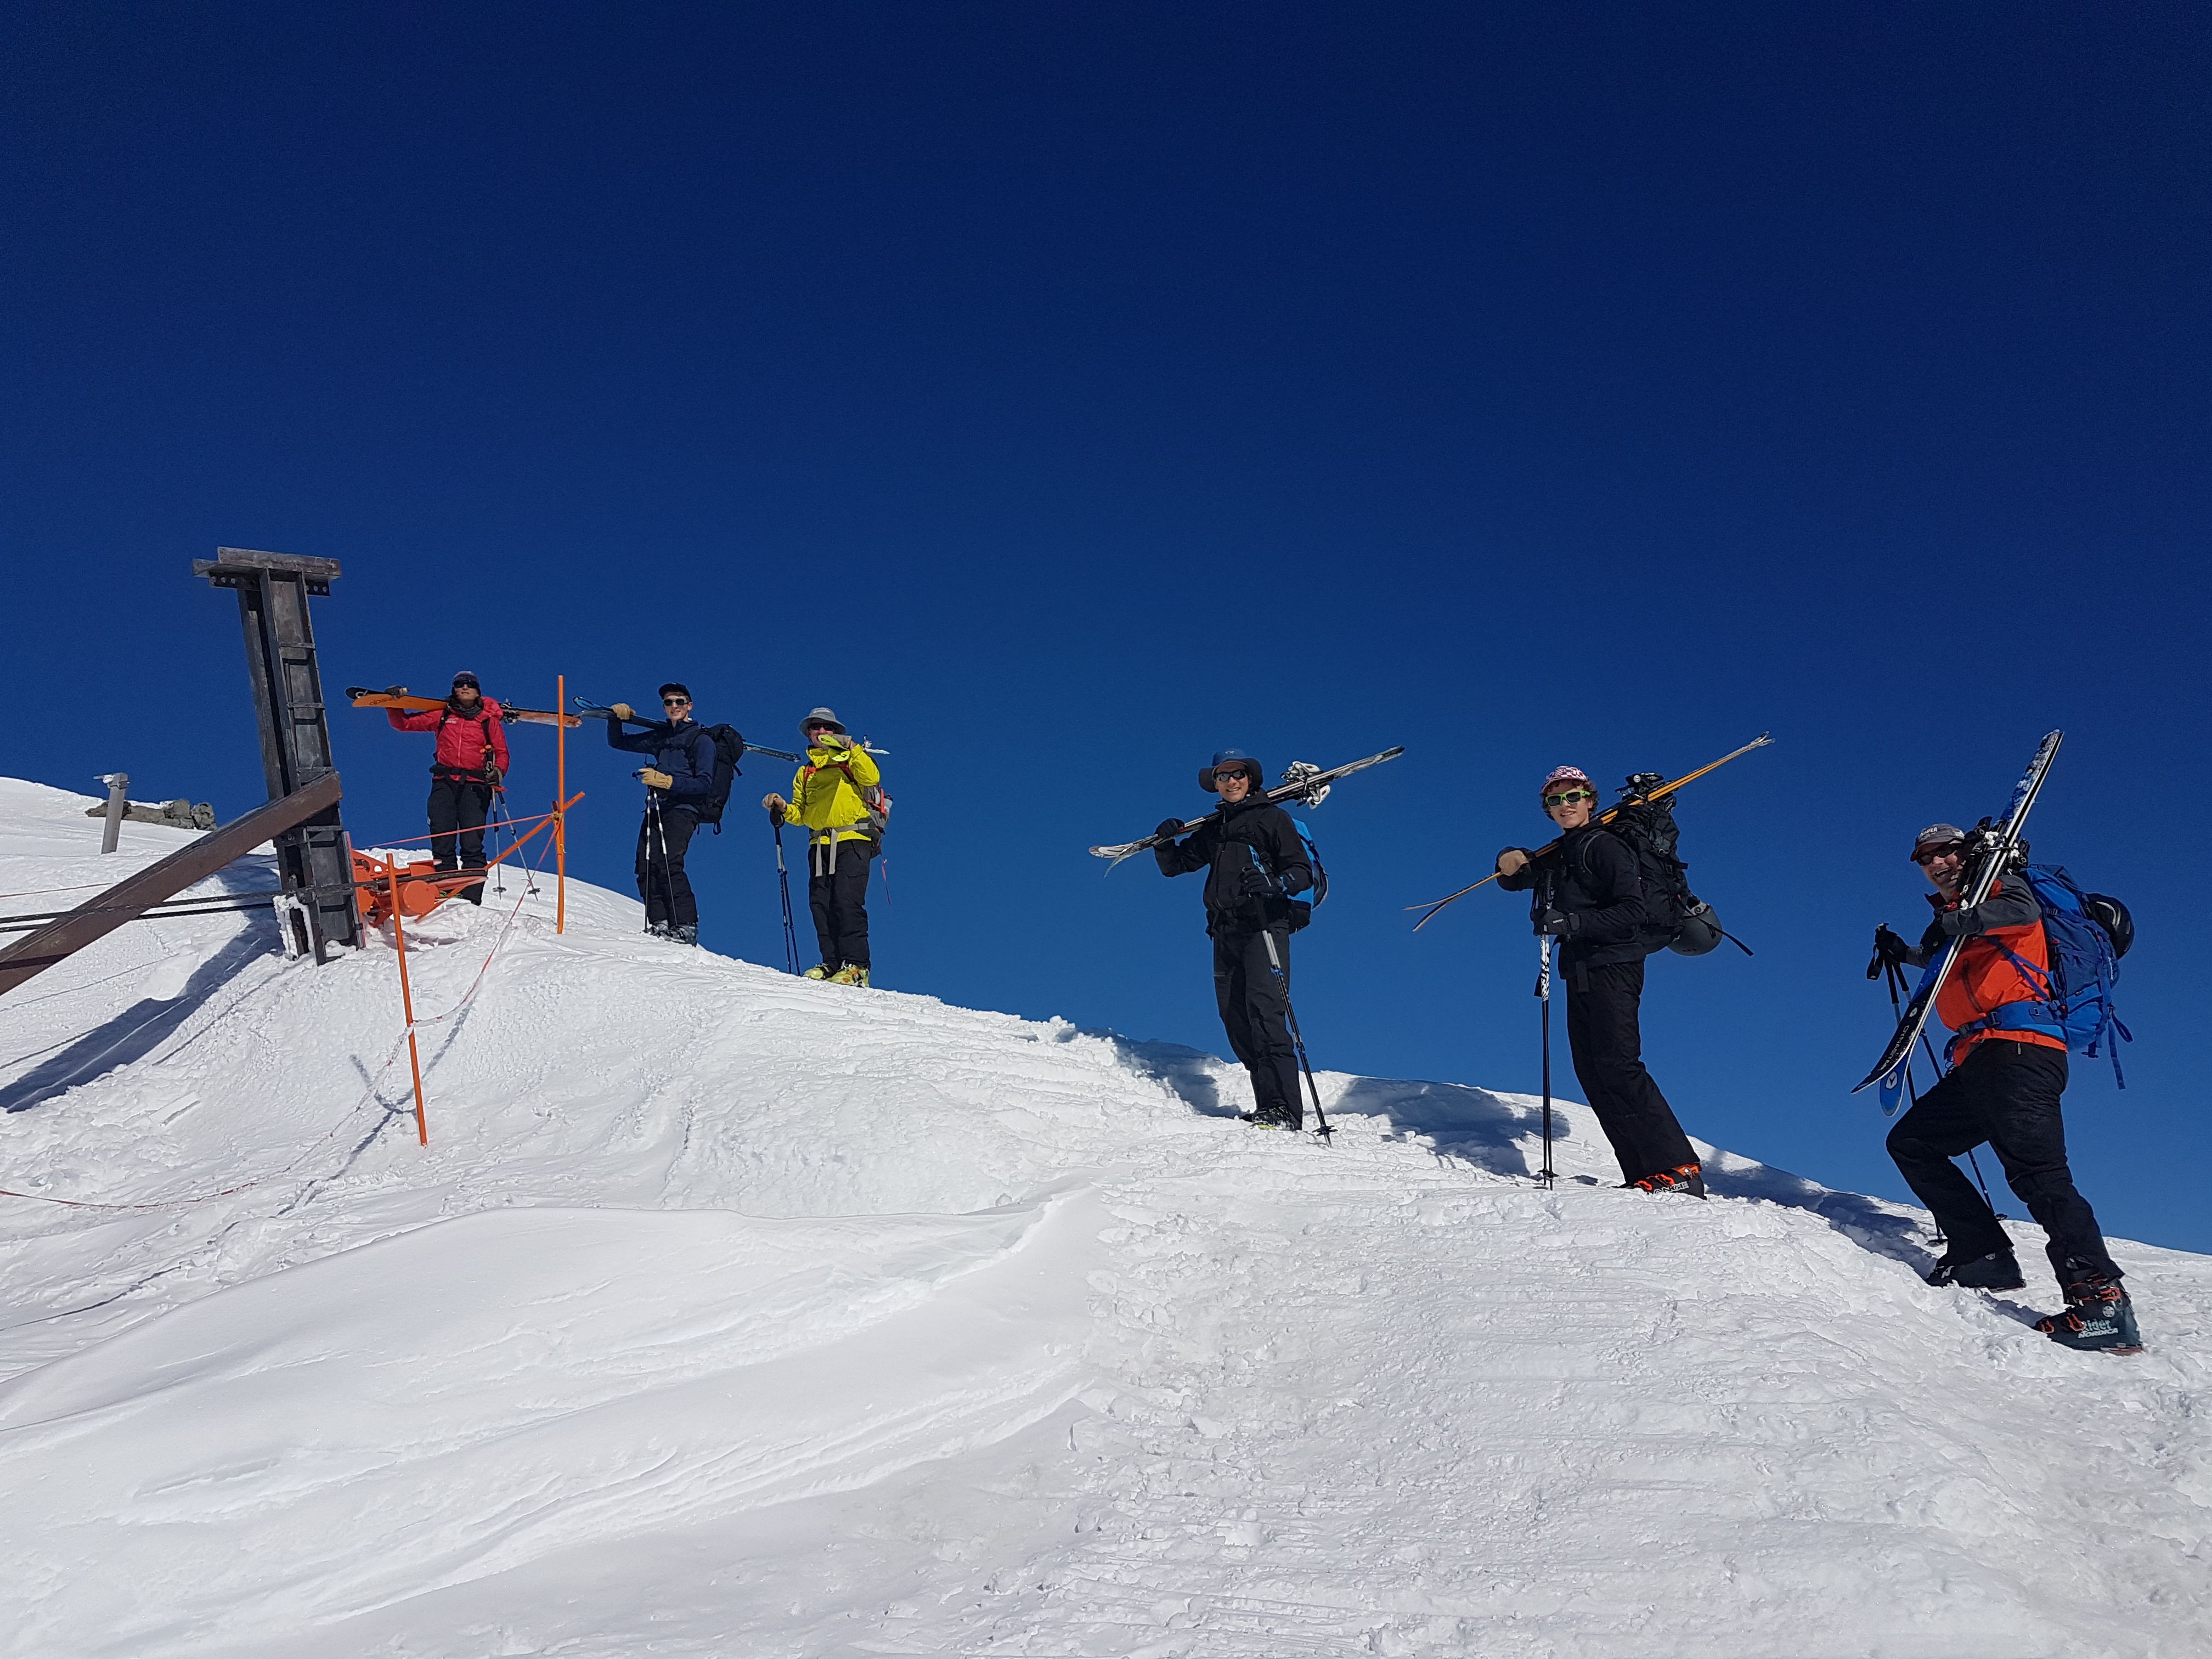 6 people walking up snowy ridge carrying skis